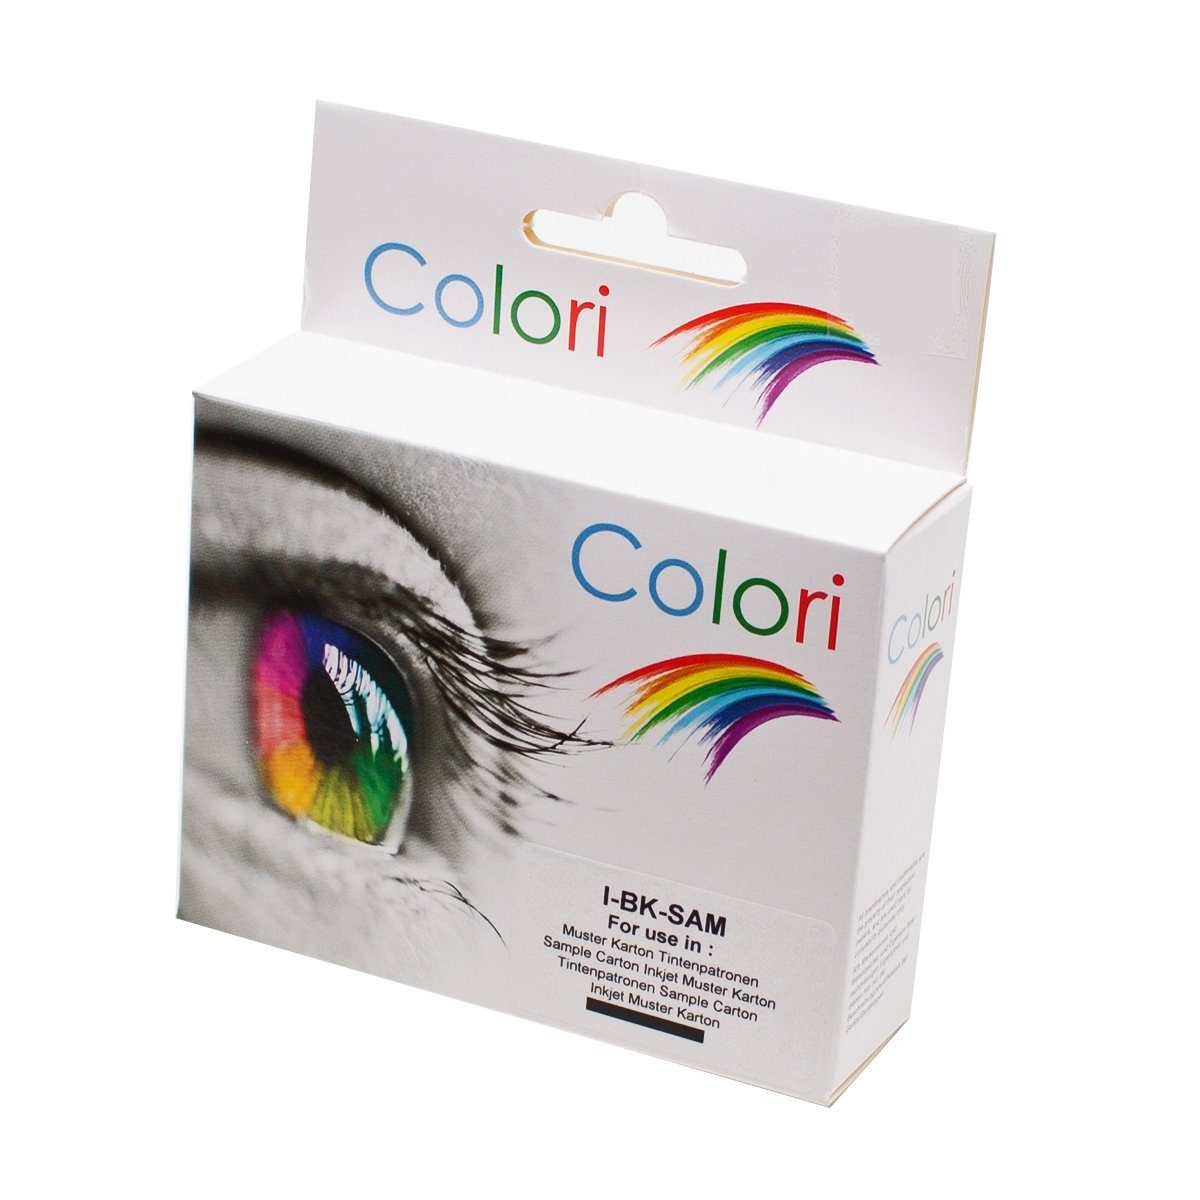 Colori Tintenpatrone (Kompatible Druckerpatrone für Canon CLI-521 Grau für Pixma MP-540 MP-550 MP-560 MP-620 MP-630 MP-640 MP-980 MP-990 MX-860 MX-870 IP-3600 IP-4600 IP-4700 von Colori)